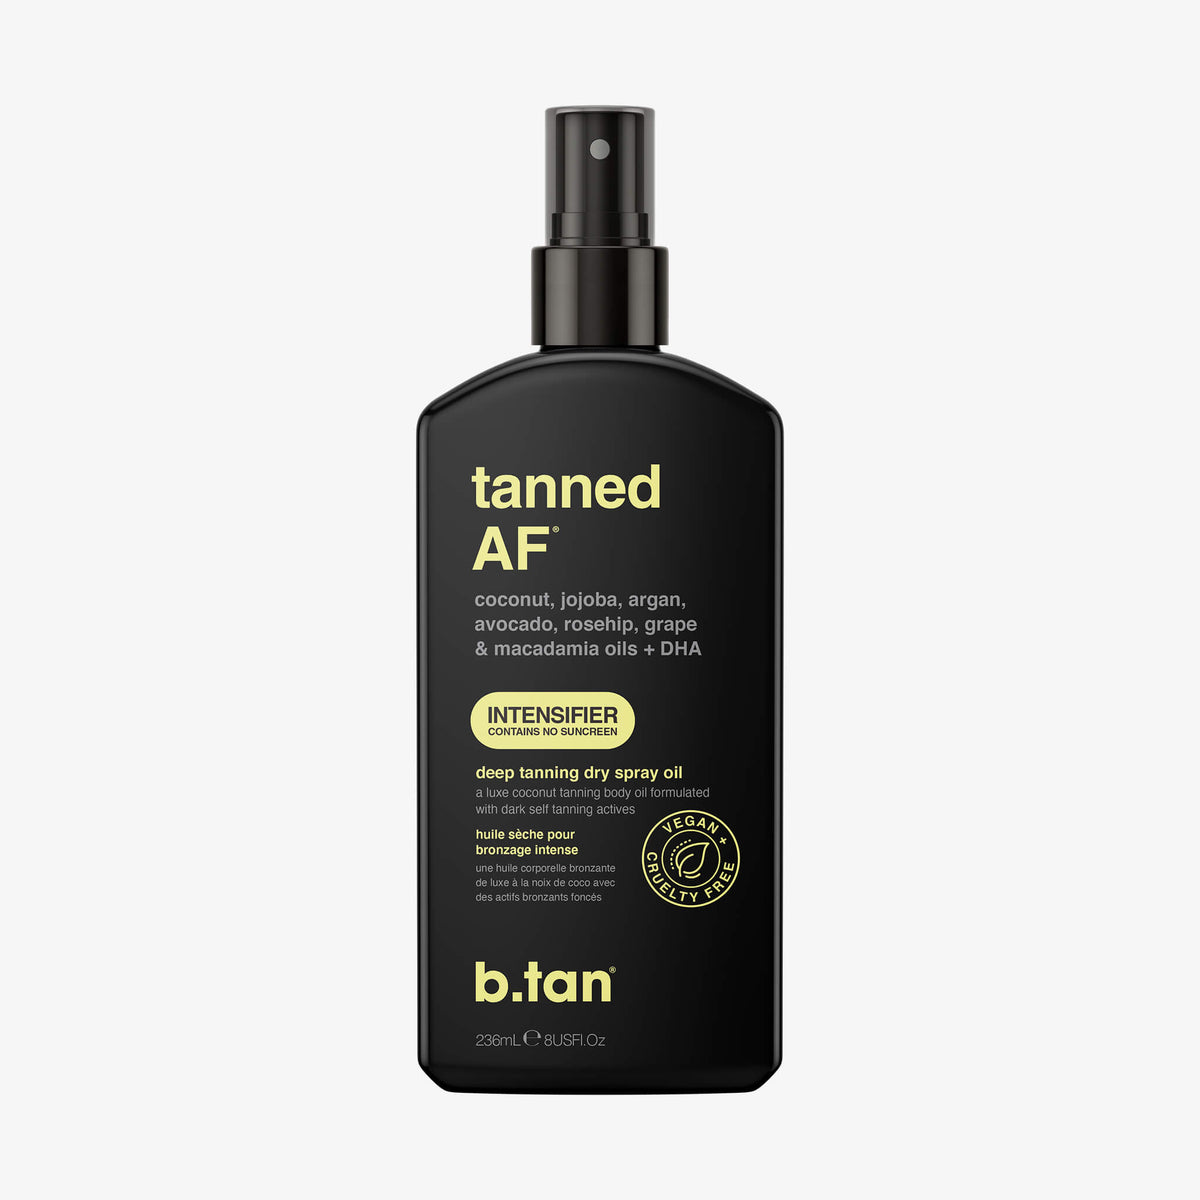 tanned AF - Tanning Oil